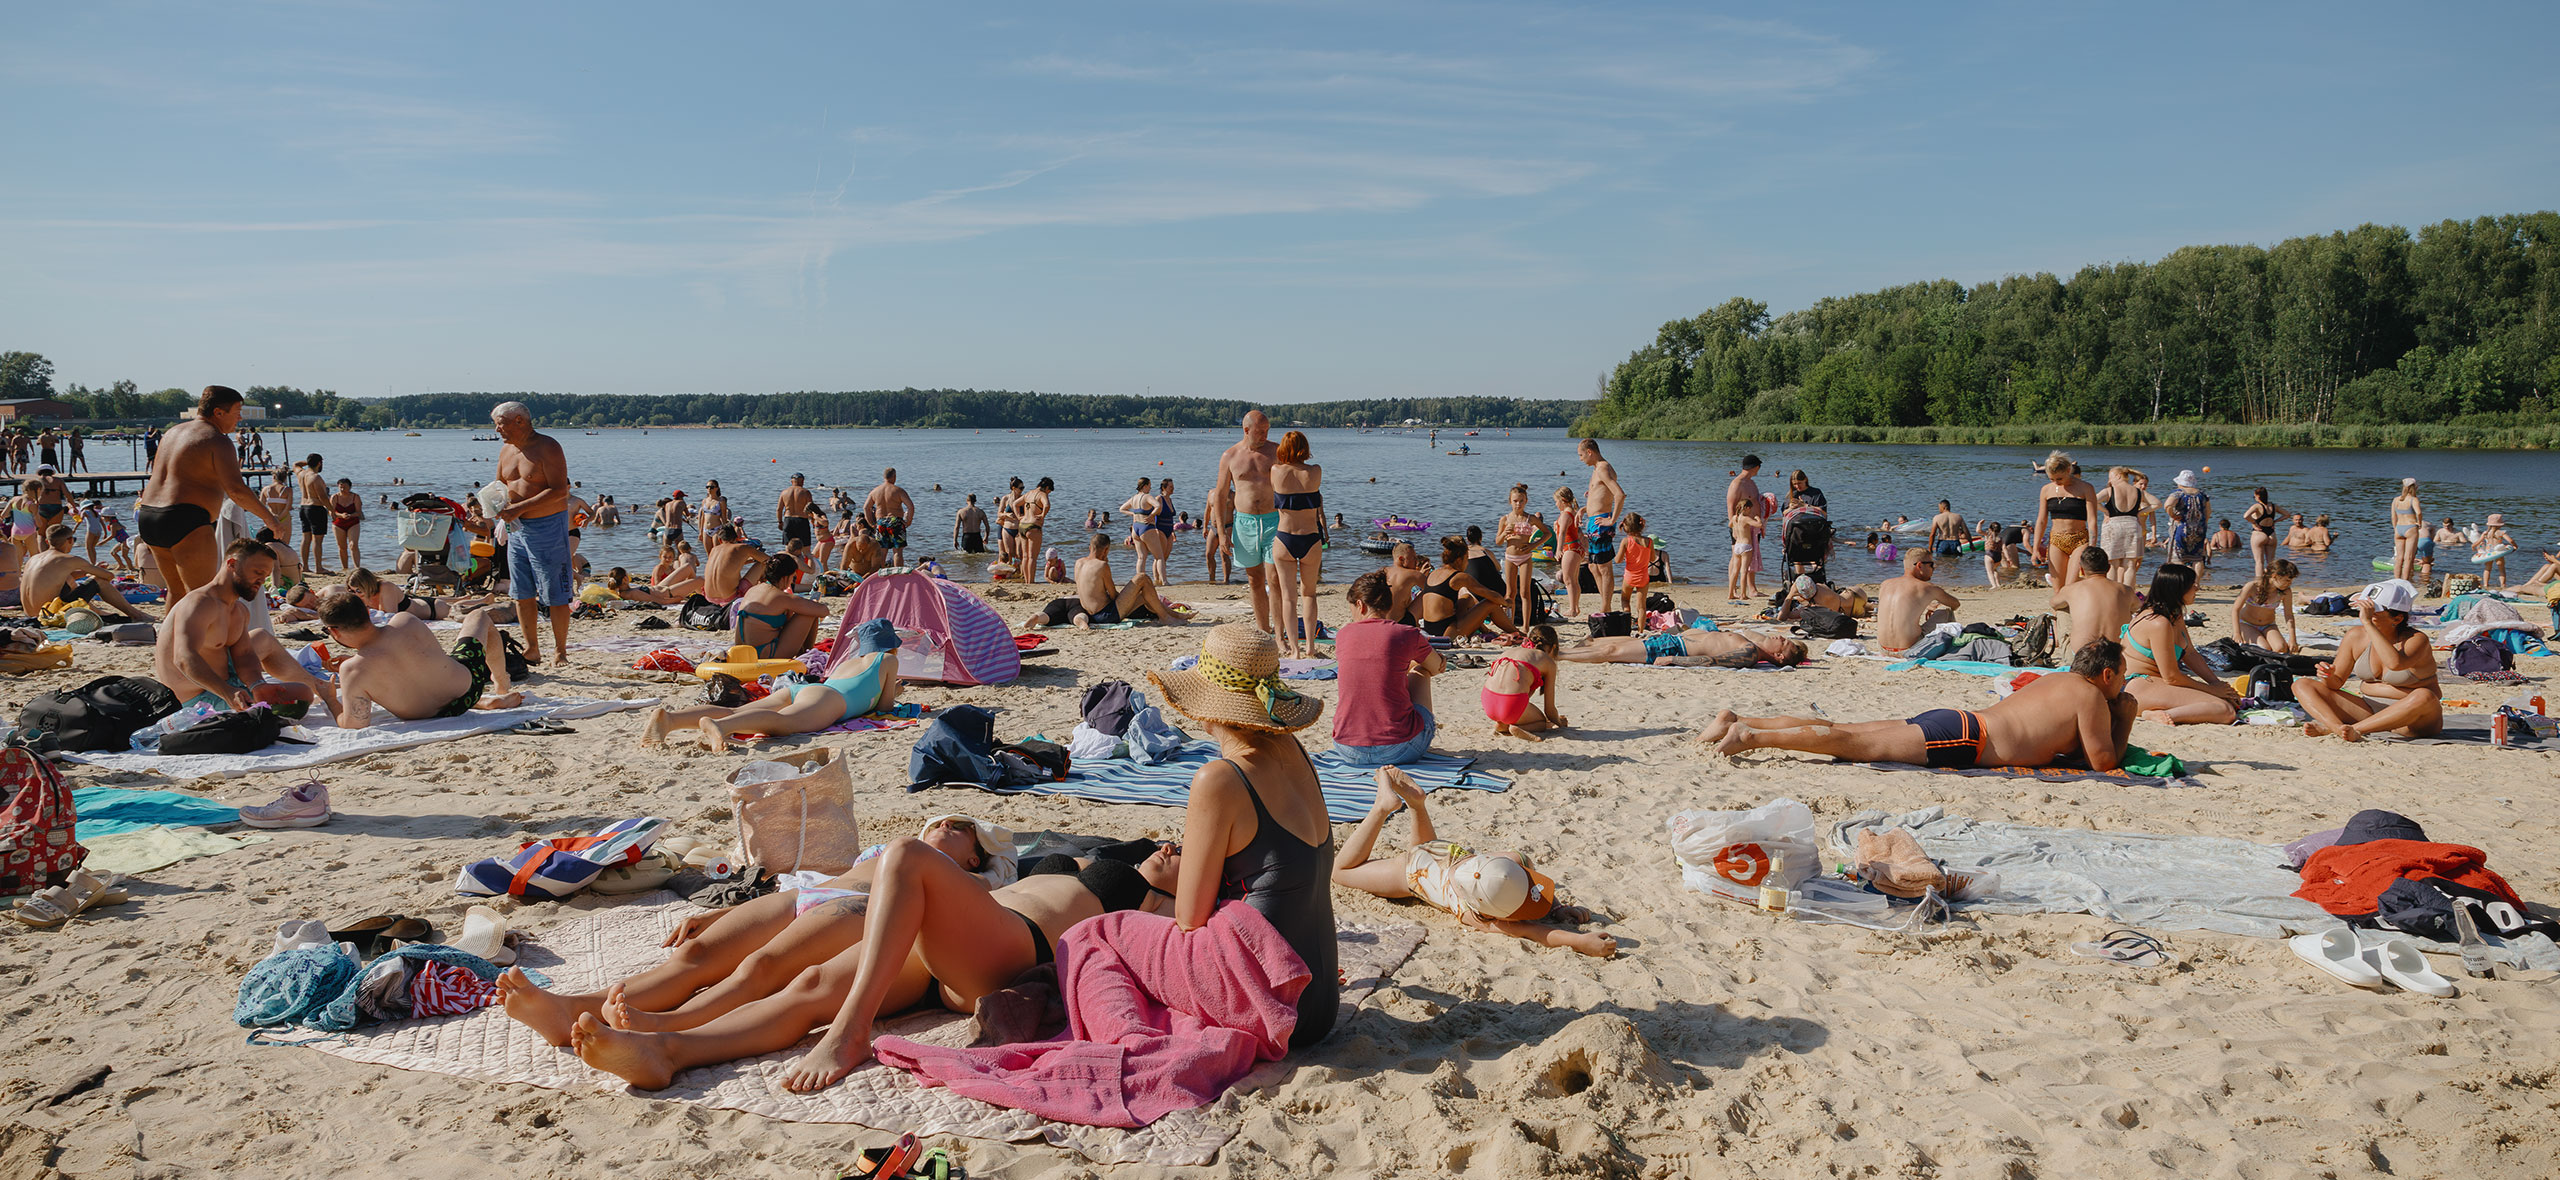 Где спасаться от жары в Москве: пляжи озера Сенеж